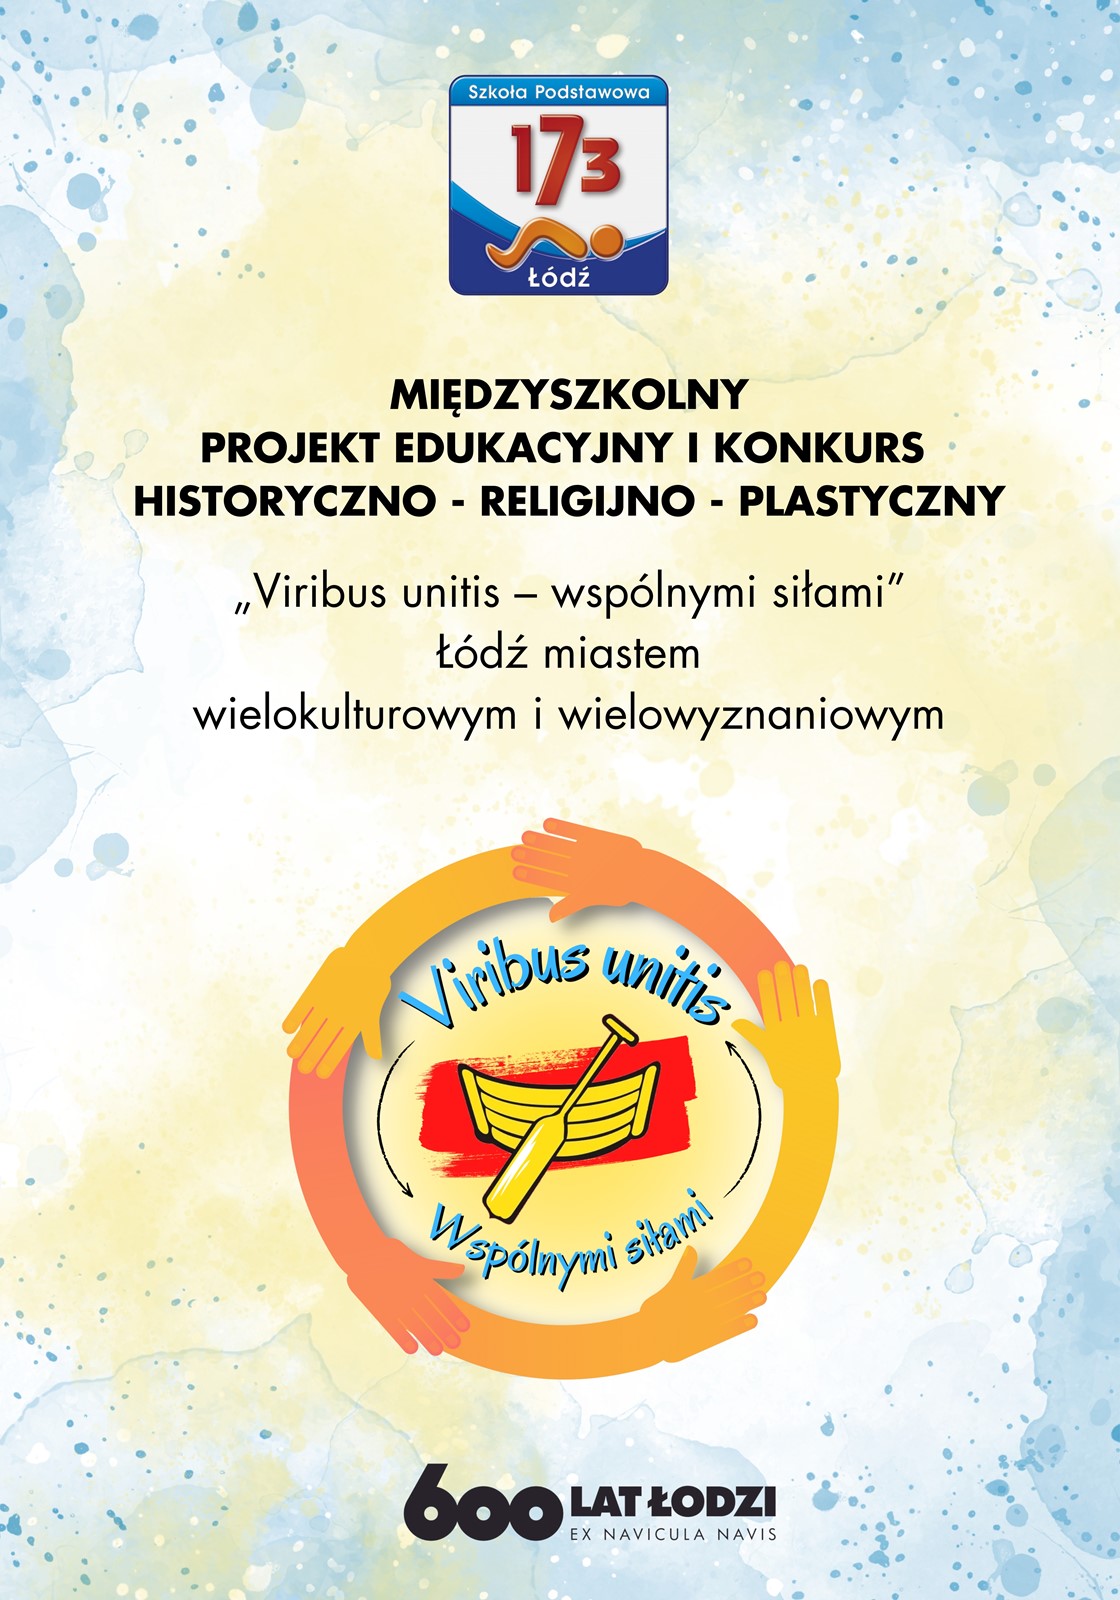 plakat z logo szkoły oraz napisami "Międzyszkolny projekt edukacyjny i konkurs historyczno-religijno-plastyczny", "Viribus unitis - wspólnymi siłami"Łódź miastem wielokulturowym i wielowyznaniowym. Pod spodem znajduje się logo projektu oraz logo 600-lecia Łodzi